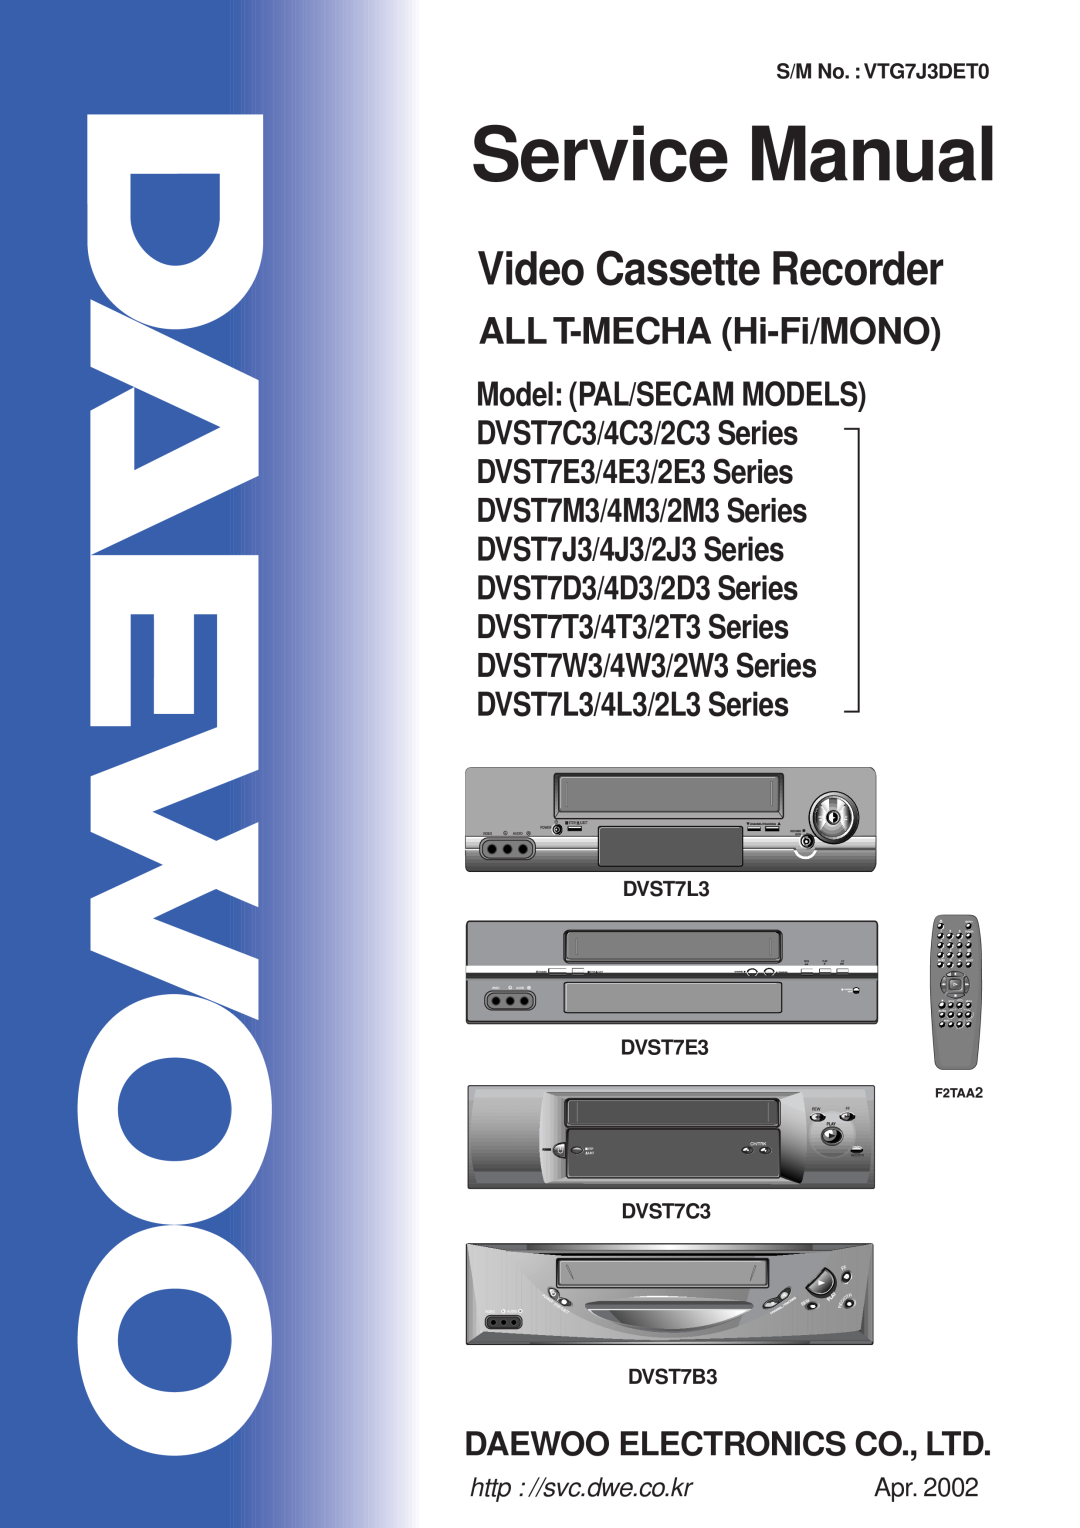 Daewoo DVST7E3/4E3/2E3 service manual Service Manual, Video Cassette Recorder, ALL T-MECHA Hi-Fi/MONO, S/M No. VTG7J3DET0 